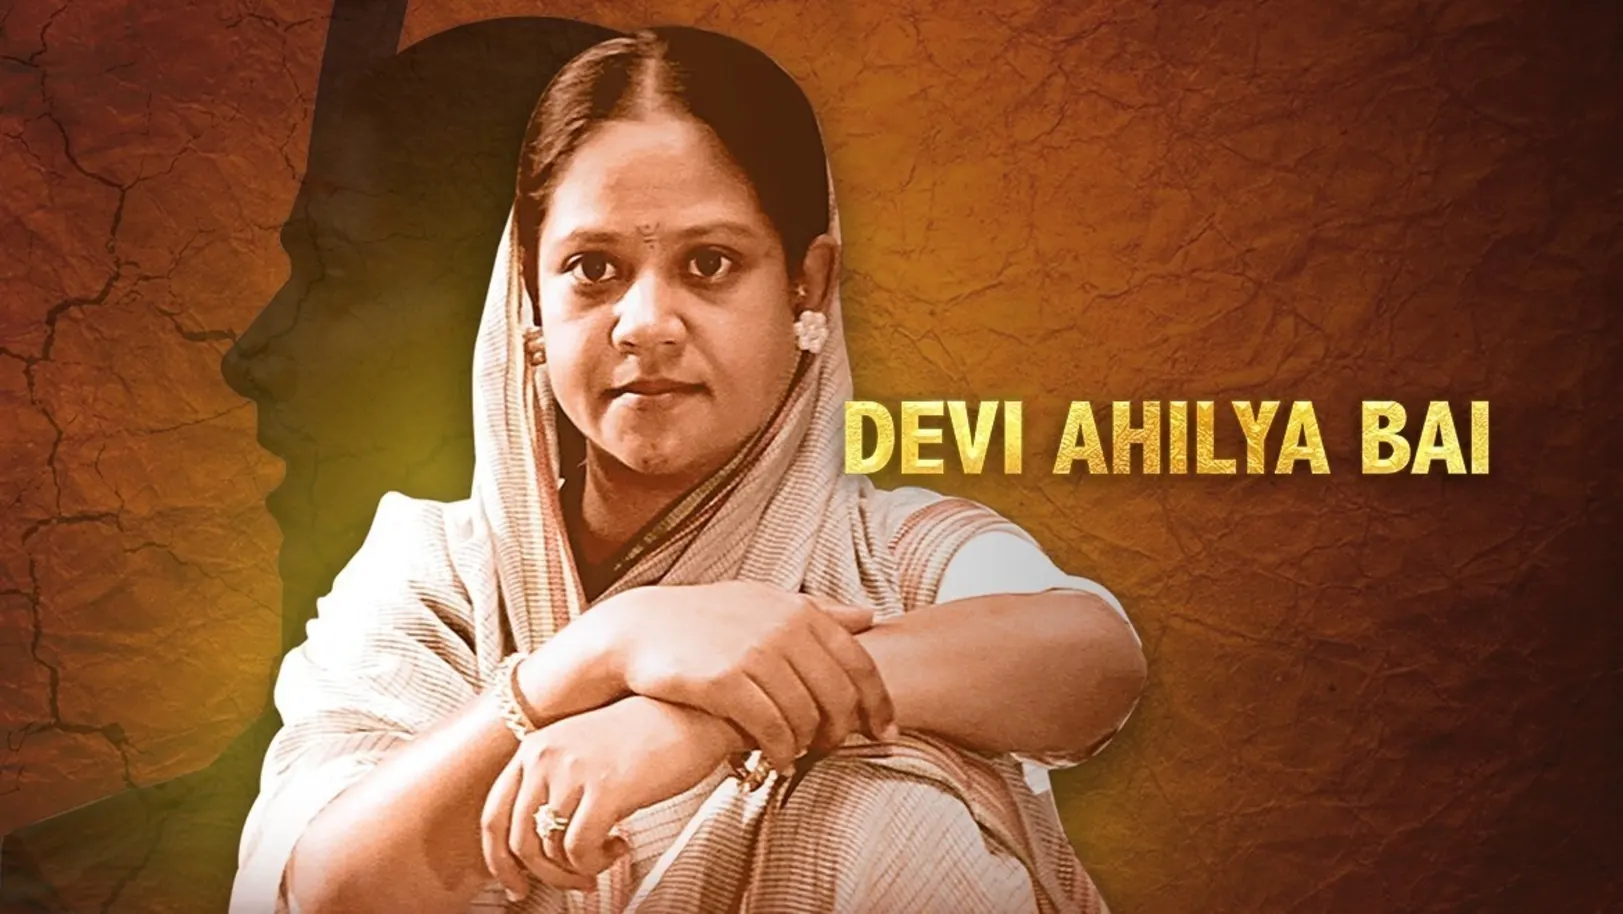 Devi Ahilyabai Movie